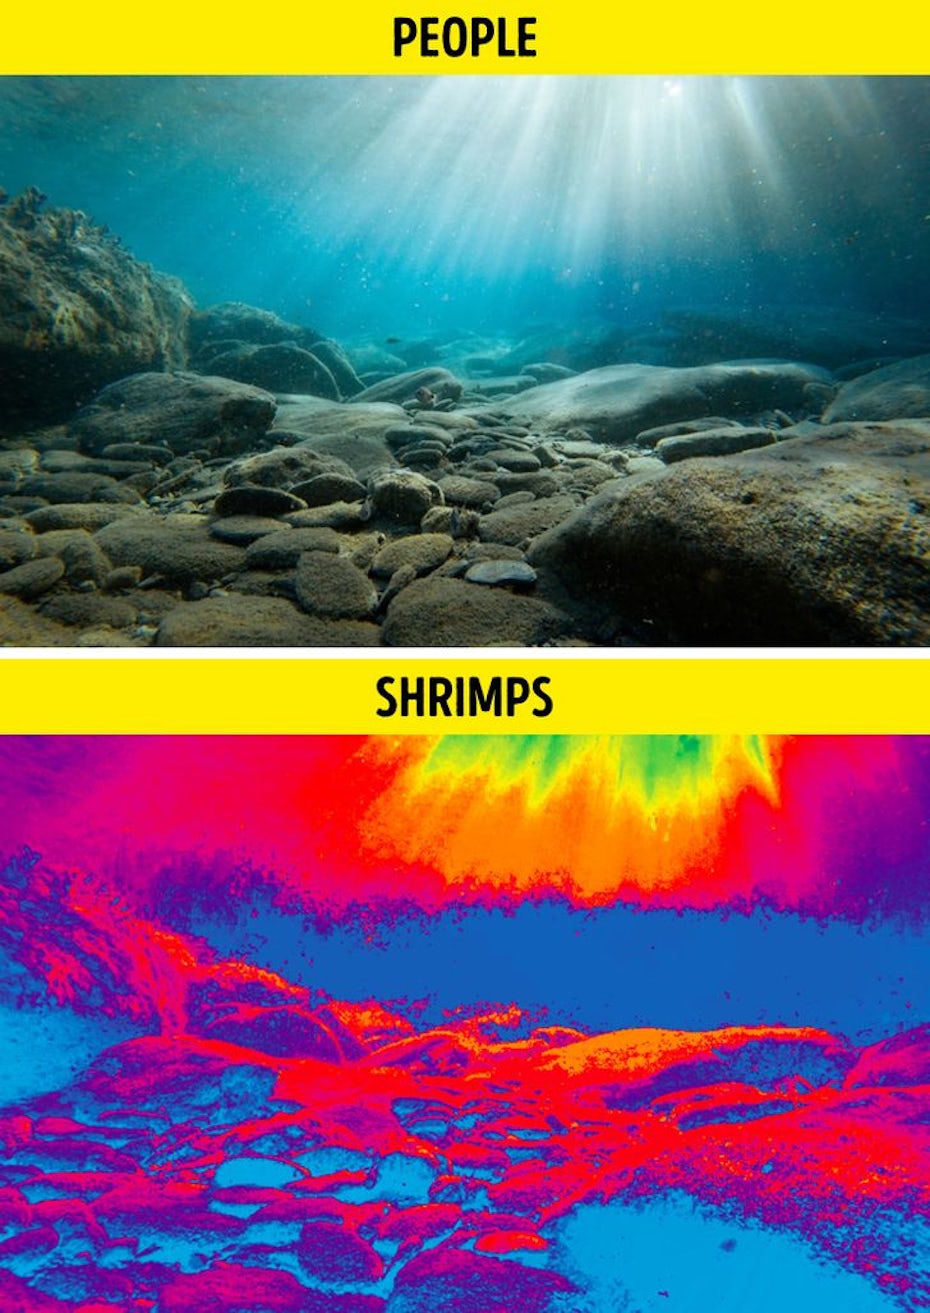 comparison images showing a mantis shrimp’s point of view vs a human’s